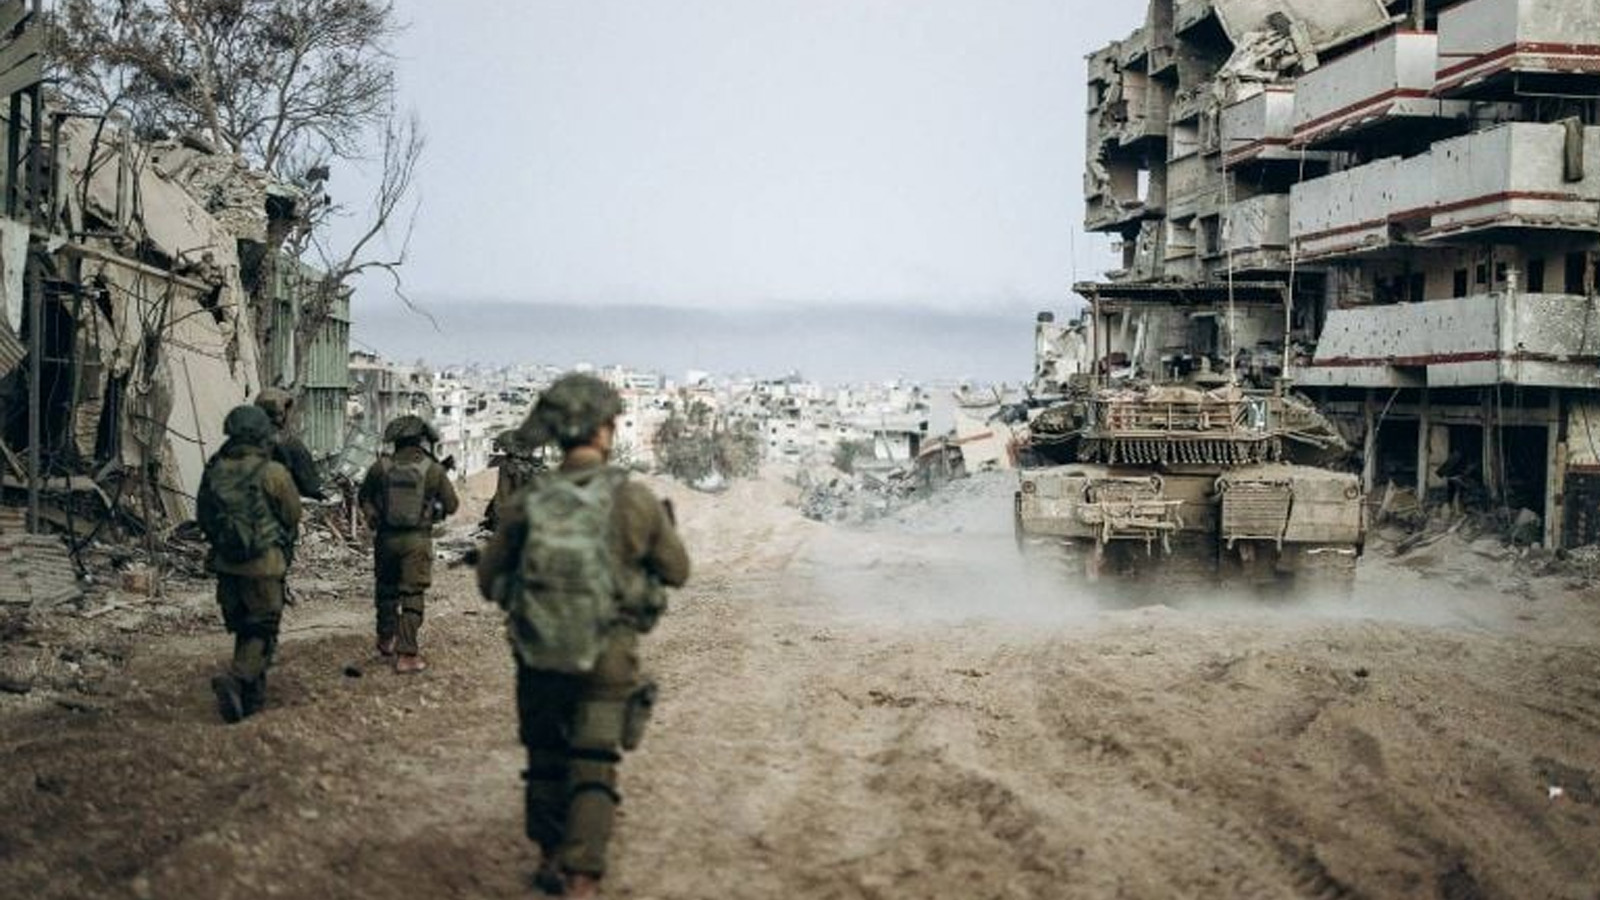 صورة نشرها الجيش الإسرائيلي في 1 يناير(كانون الثاني) 2024 لجنود إسرائيليين يعملون في قطاع غزة وسط معارك مستمرة بين إسرائيل وحركة حماس الفلسطينية المسلحة